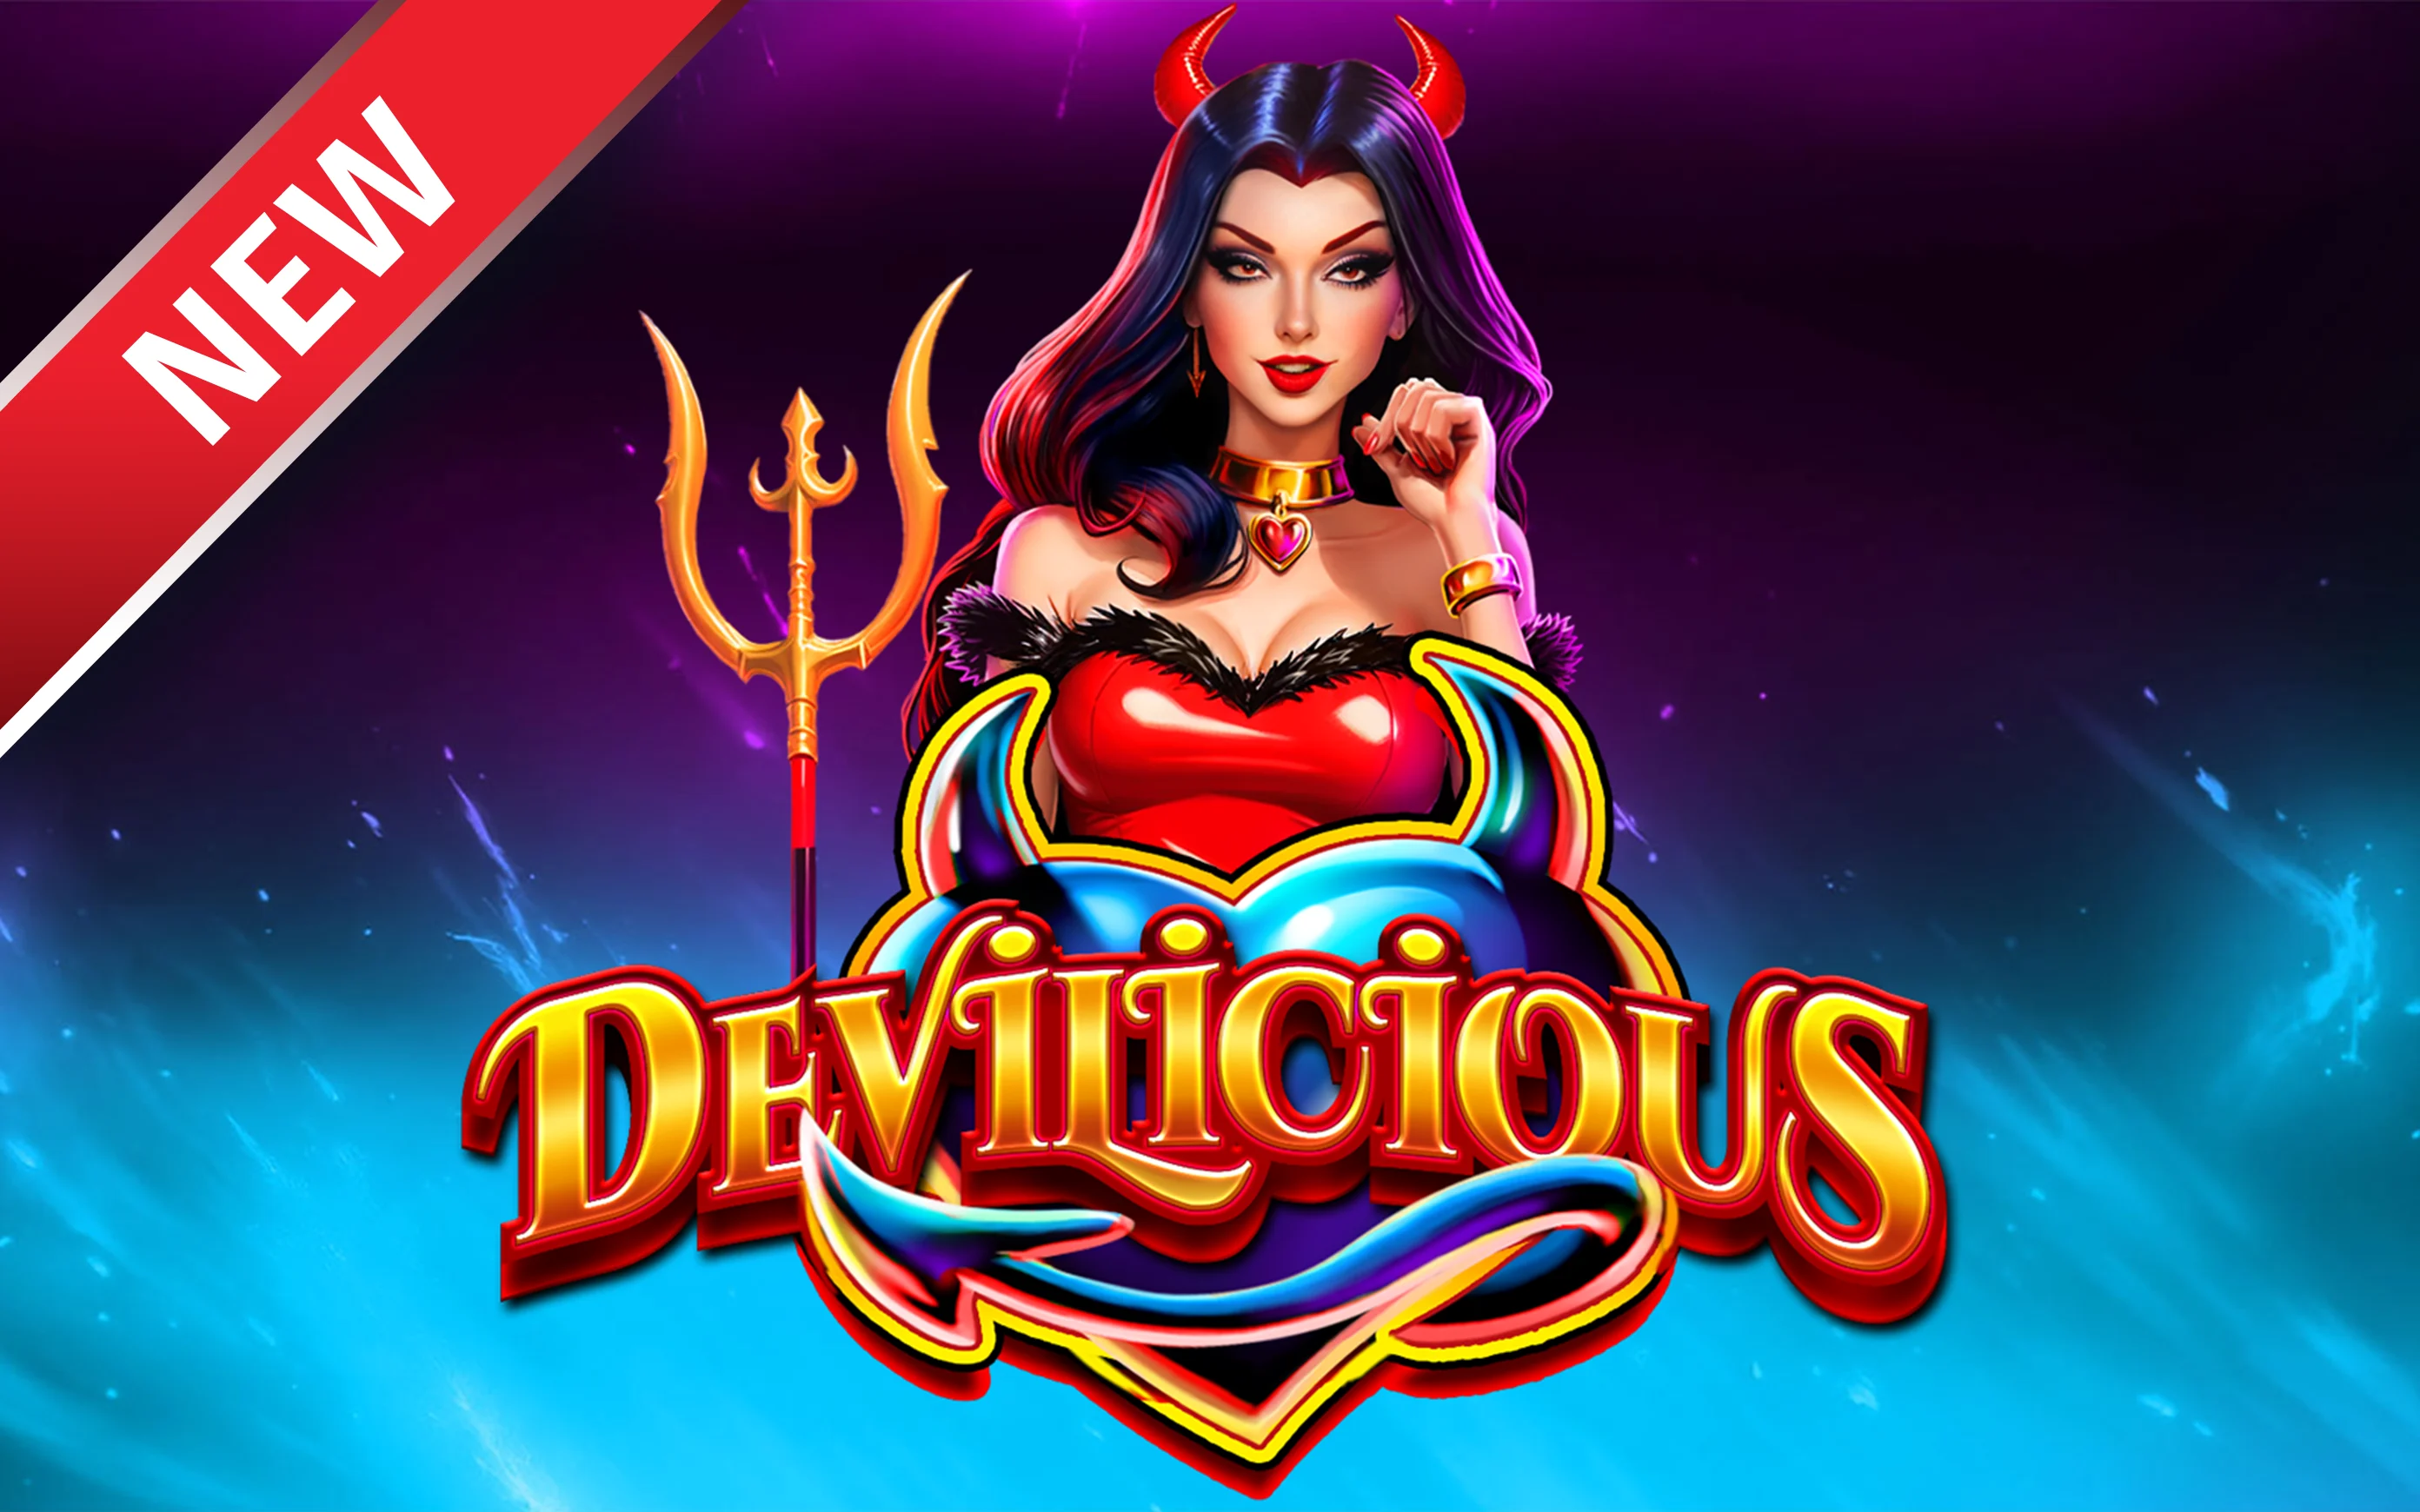 Gioca a Devilicious sul casino online Starcasino.be